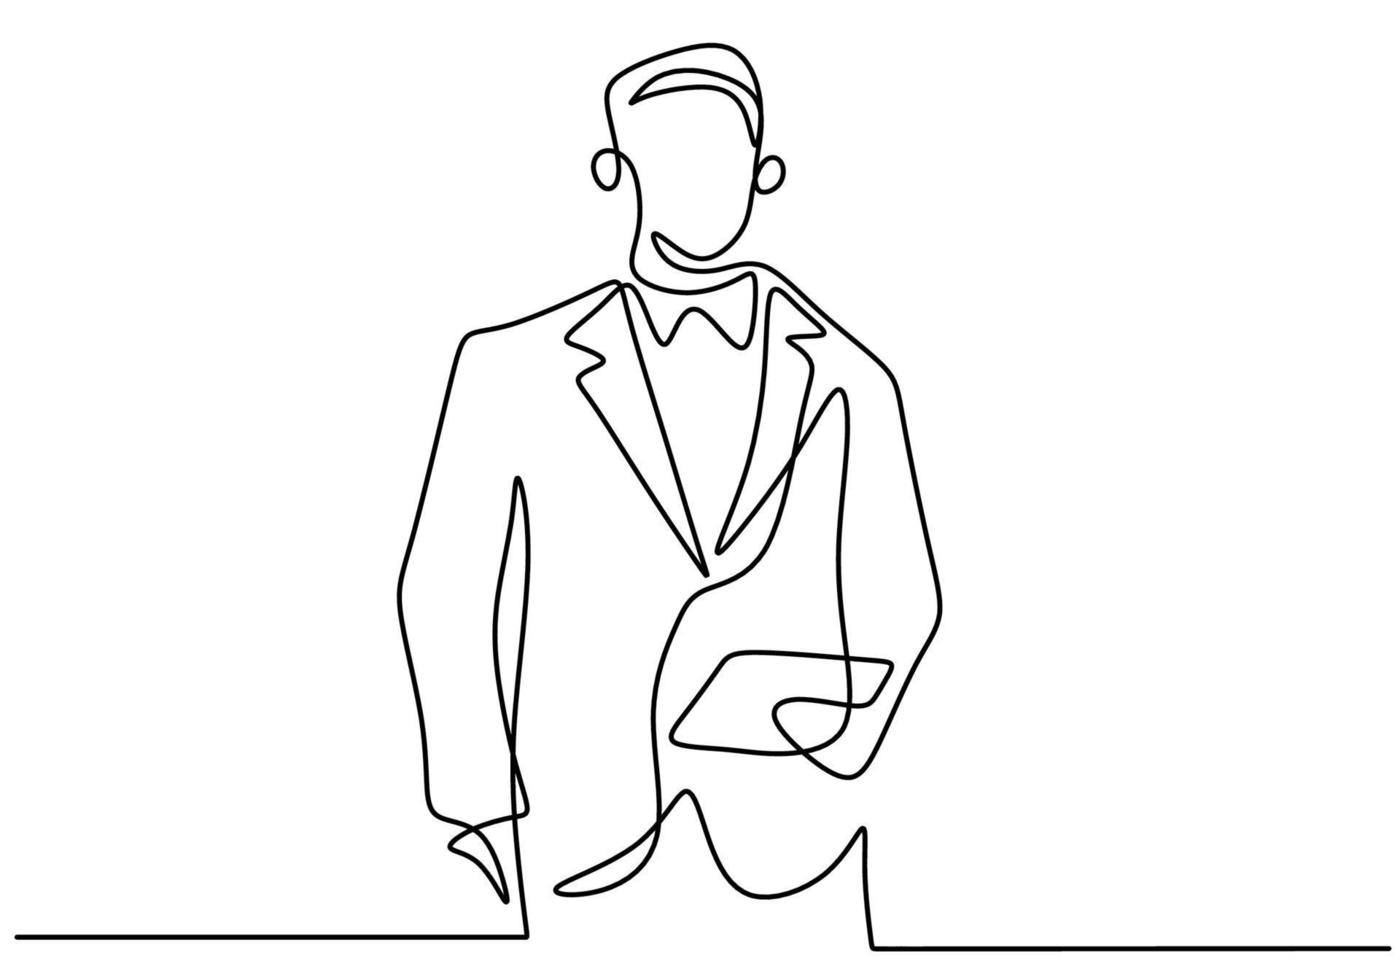 continue enkele lijntekening van jonge professionele zakenman die een pak en masker draagt terwijl hij een map of smartphonetablet draagt die op witte achtergrond wordt geïsoleerd. gadget concept. vector illustratie